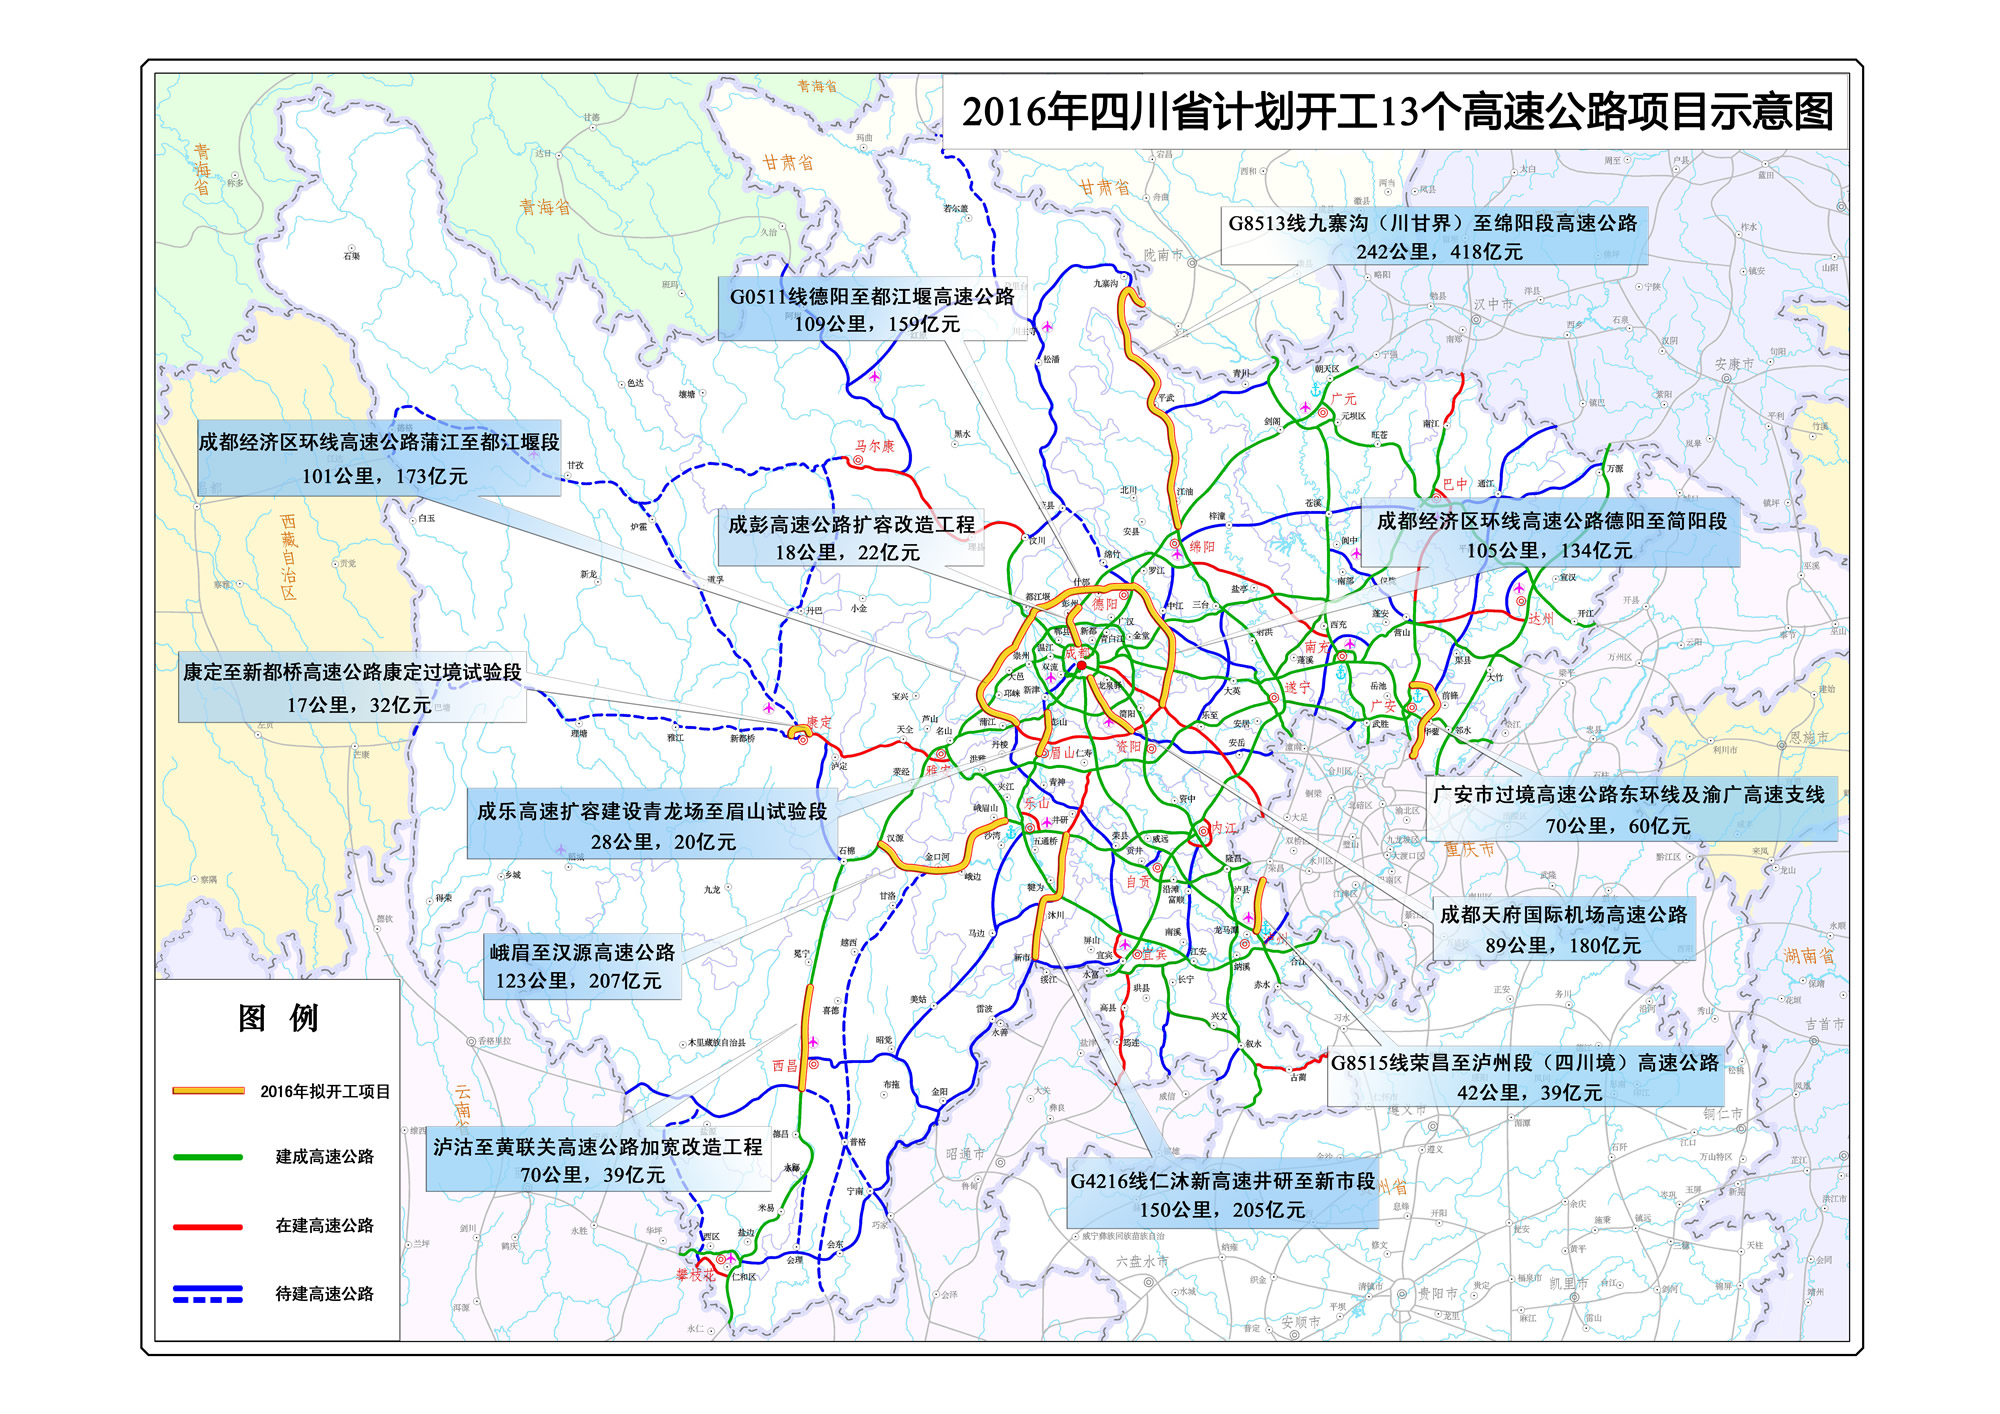 正文   四川省2016年拟开工13个高速公路项目示意图(点击查看高清大图